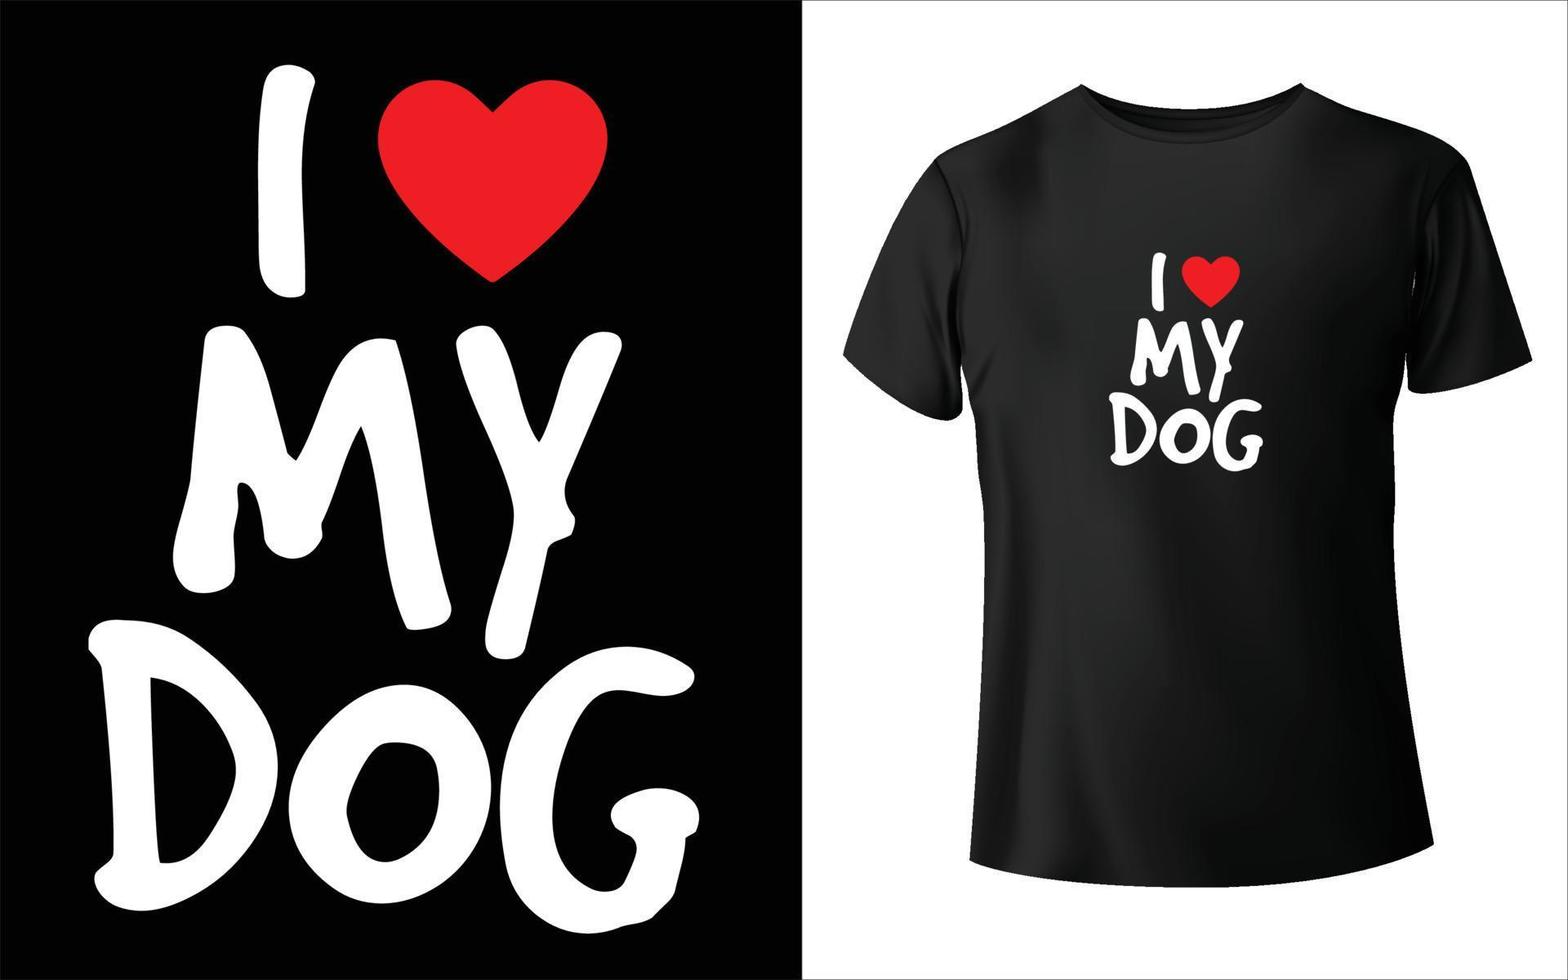 cucciolo giorno t-shirt vettore arte cane vettore, design t-shirt cane, felice giorno cucciolo.